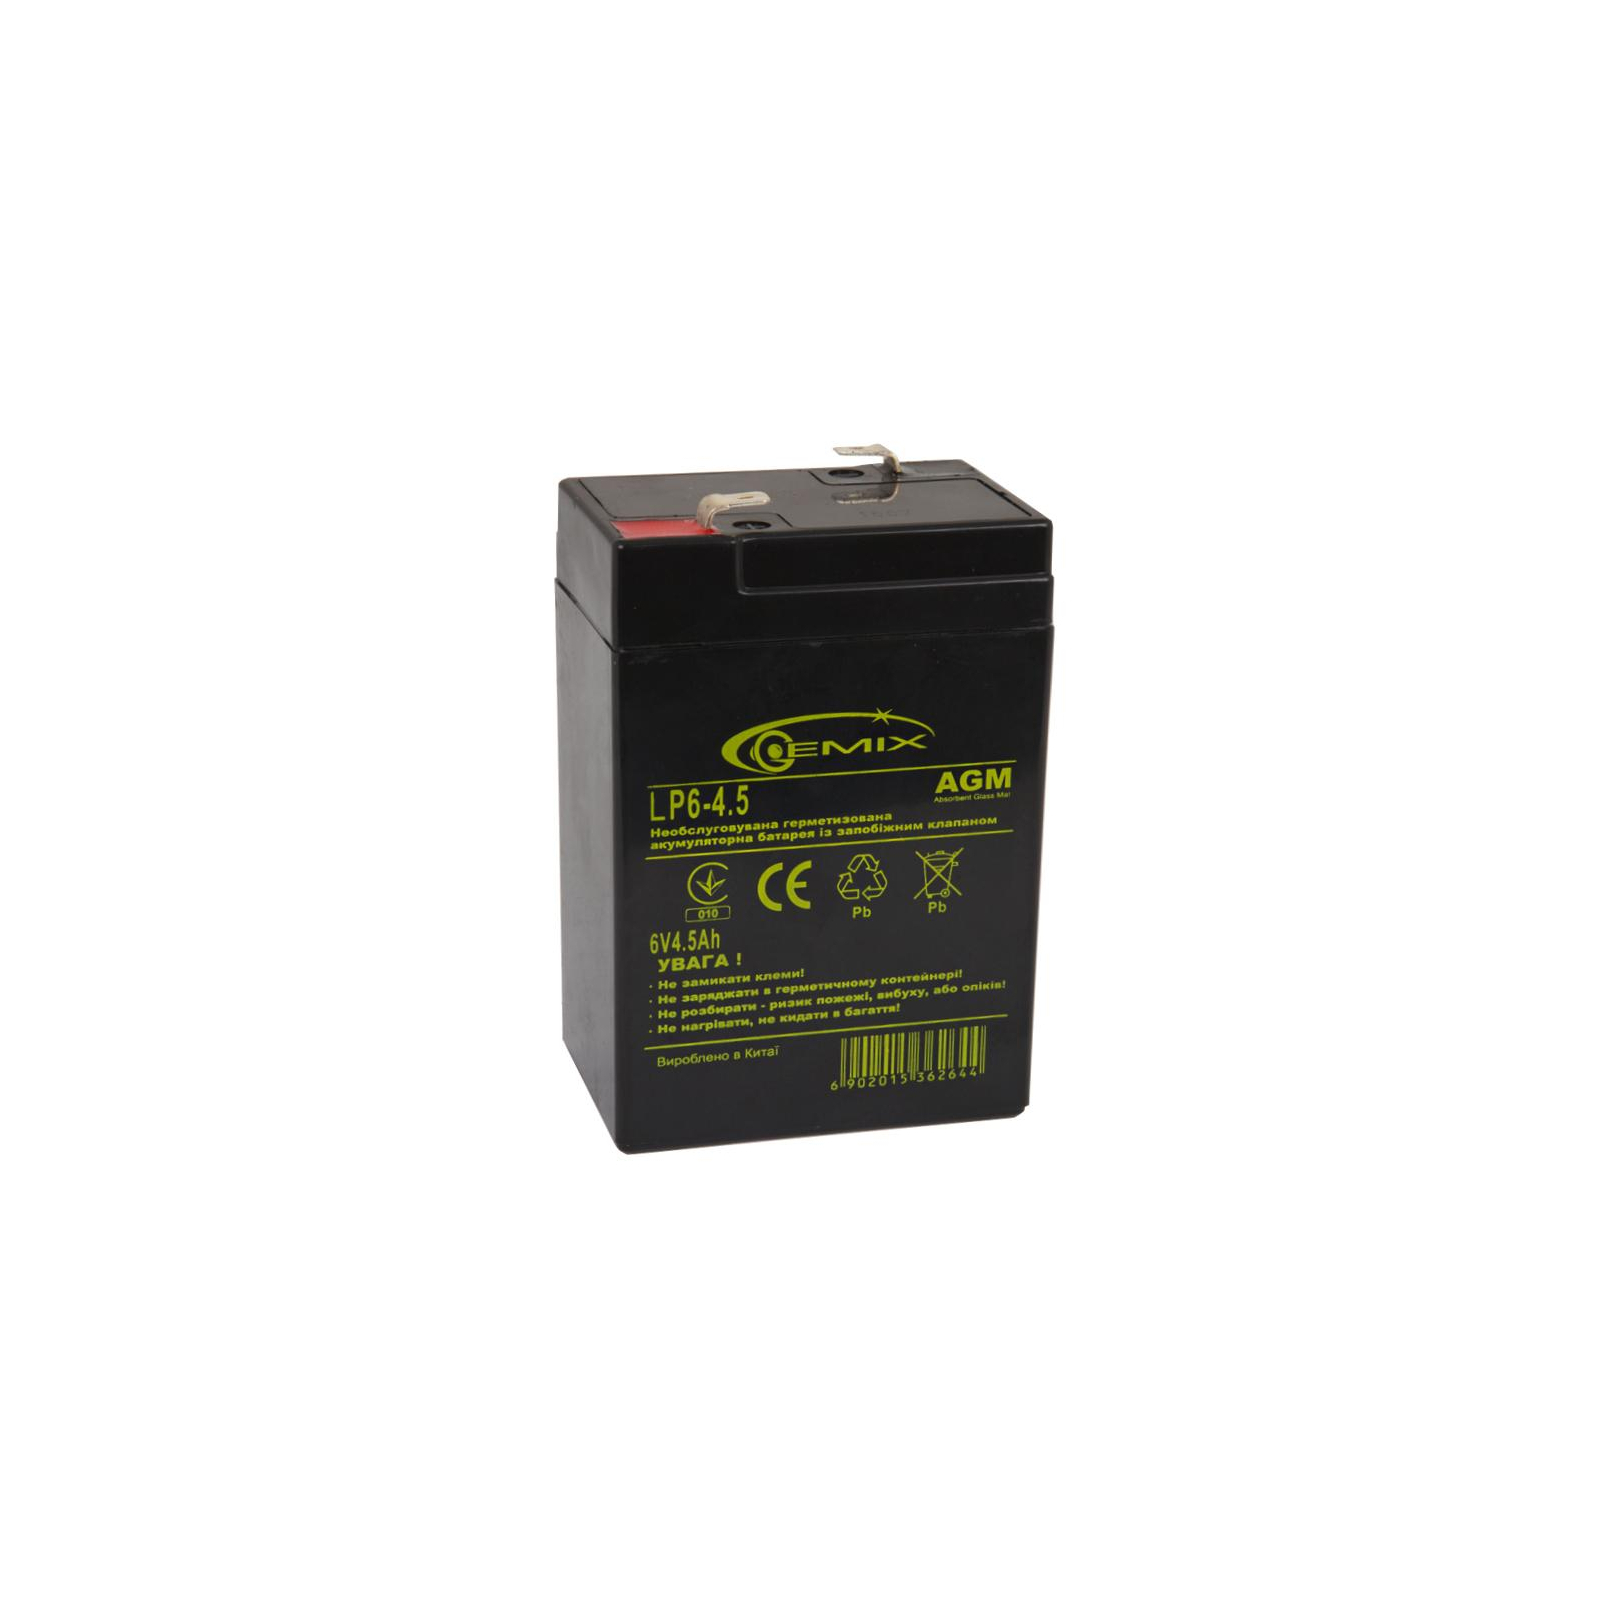 Батарея к ИБП Gemix 6В 4.5 Ач (LP6-4.5 Т2)